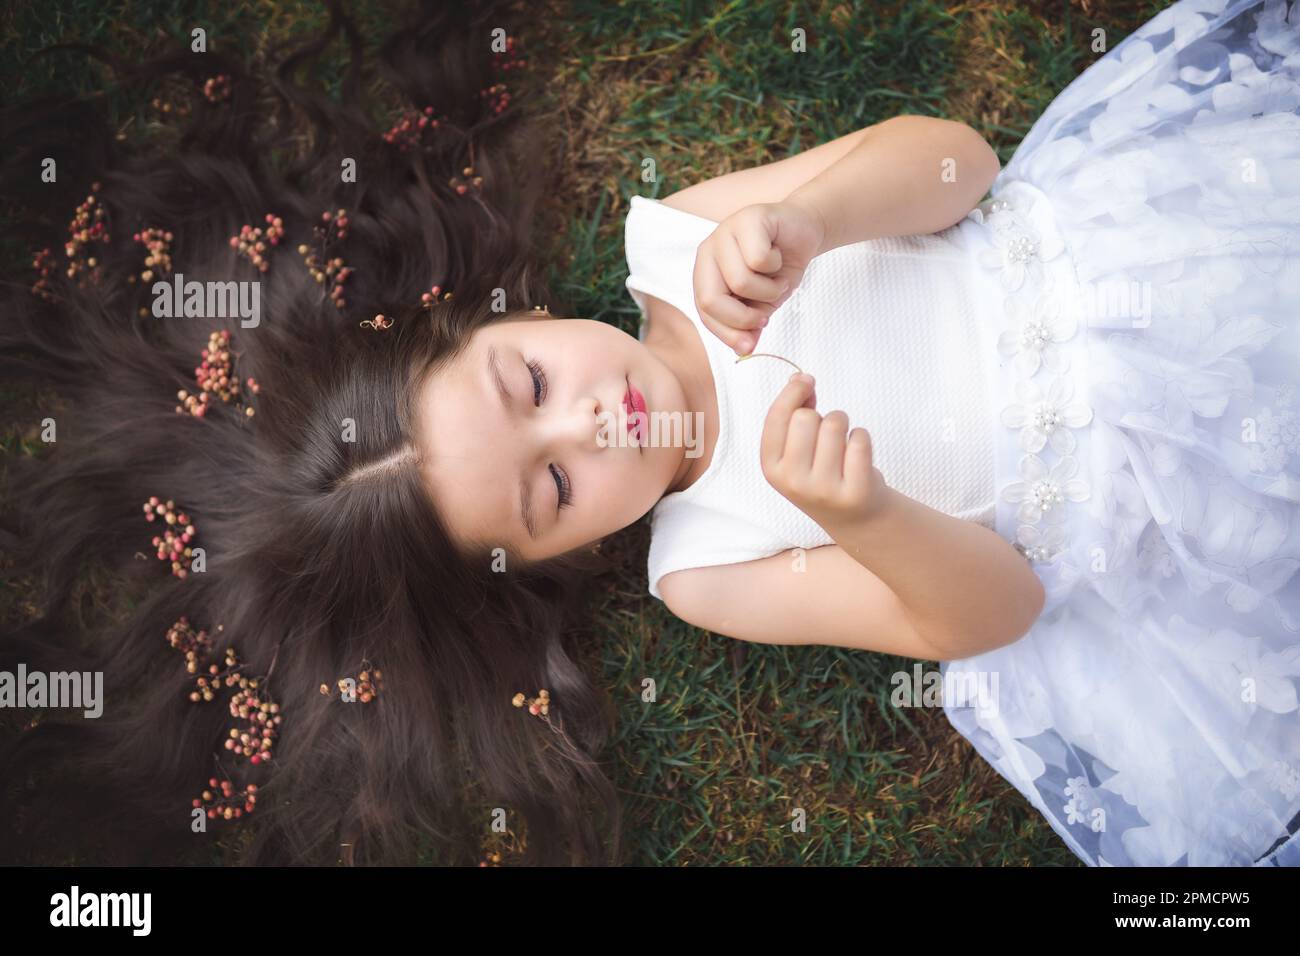 Petite fille en robe blanche couchée sur l'herbe, elle sourit, ses cheveux sont très longs et princesse-comme, elle joue avec ses mains sur le thème de l'enfant Banque D'Images